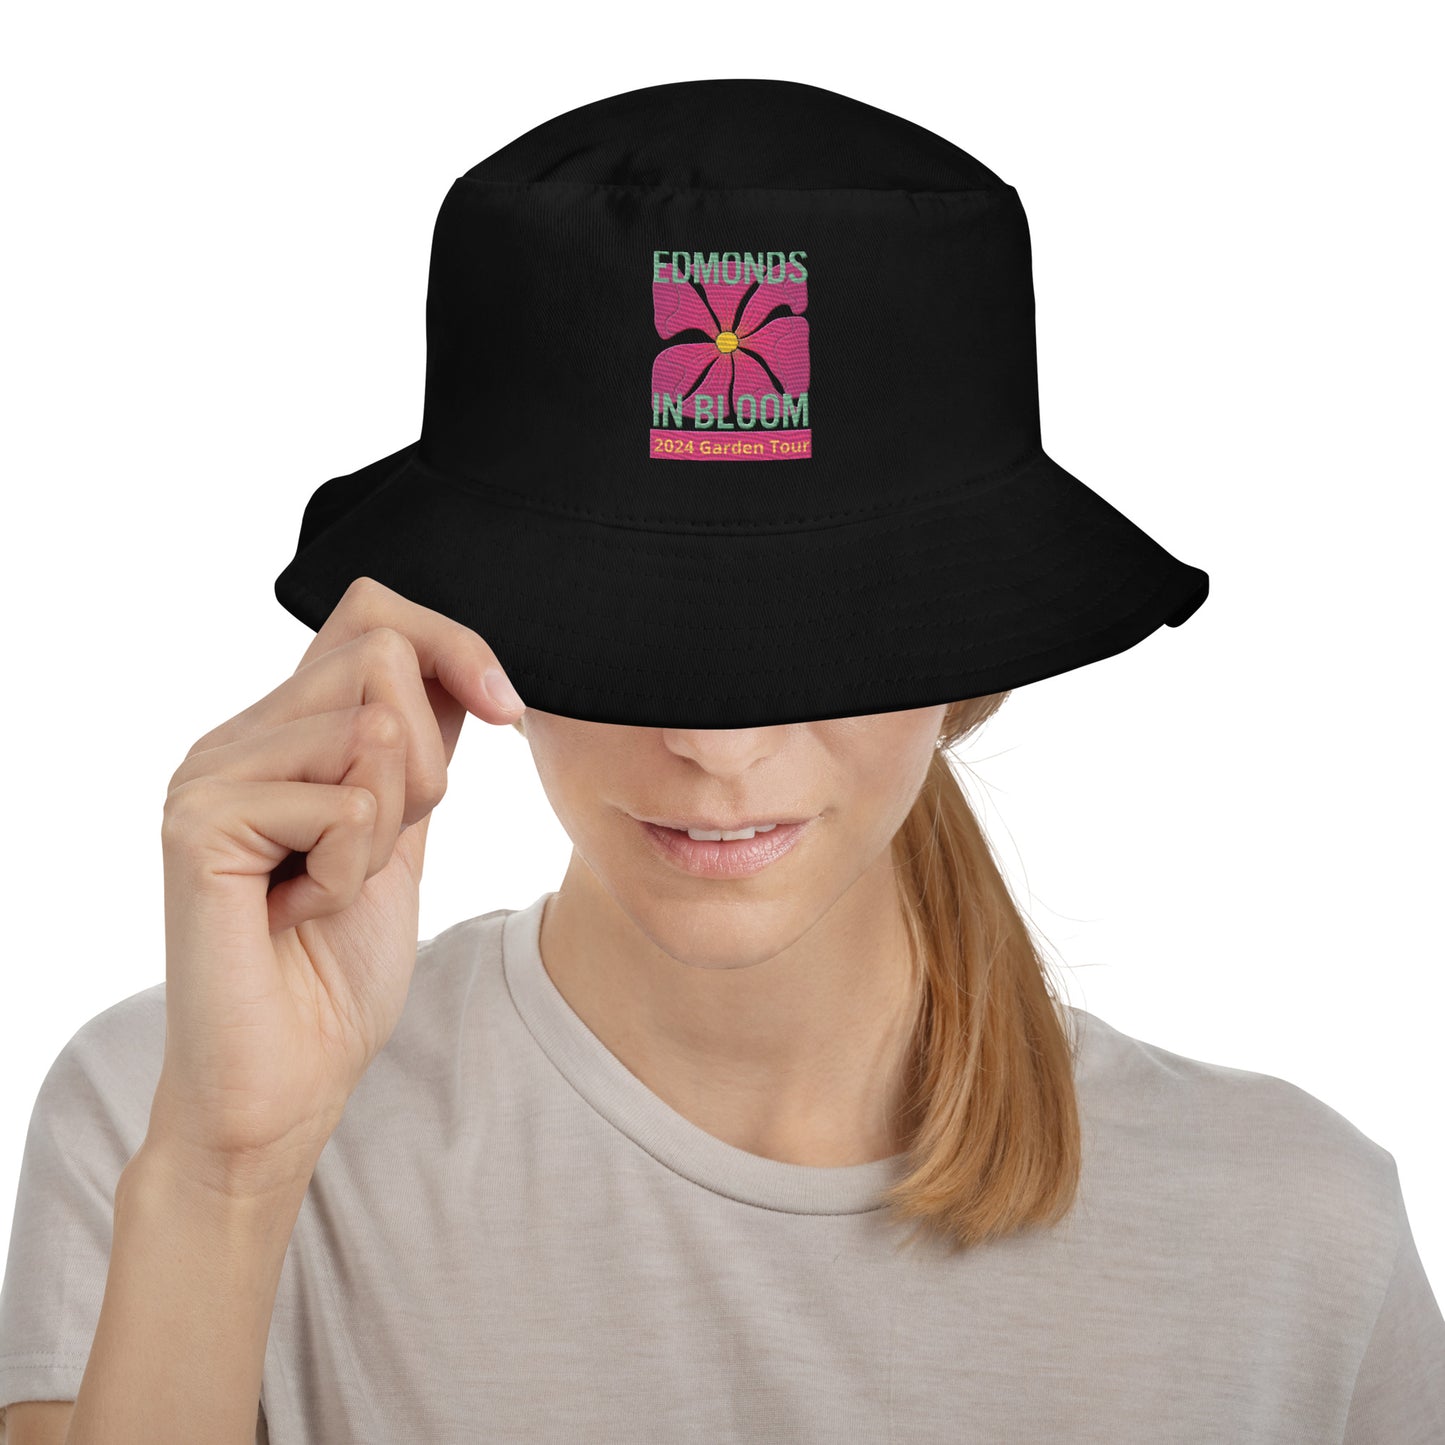 Edmonds in Bloom 2024 Garden Tour Bucket Hat